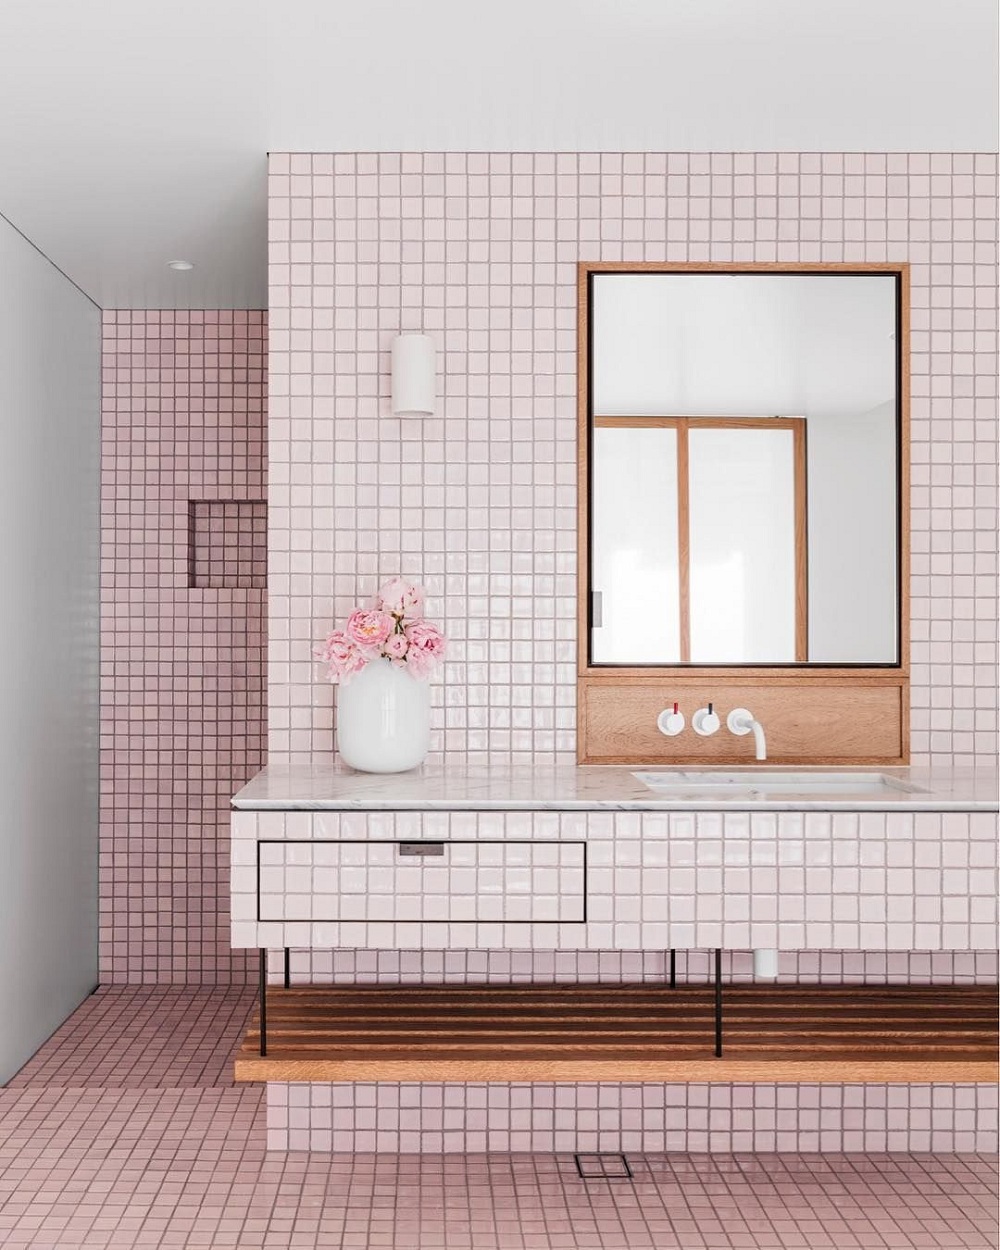 Sắc hồng pastel tạo cảm giác ấm cúng và gần gũi cho phòng tắm khi kết hợp với kệ bằng gỗ và gương thủy tinh.